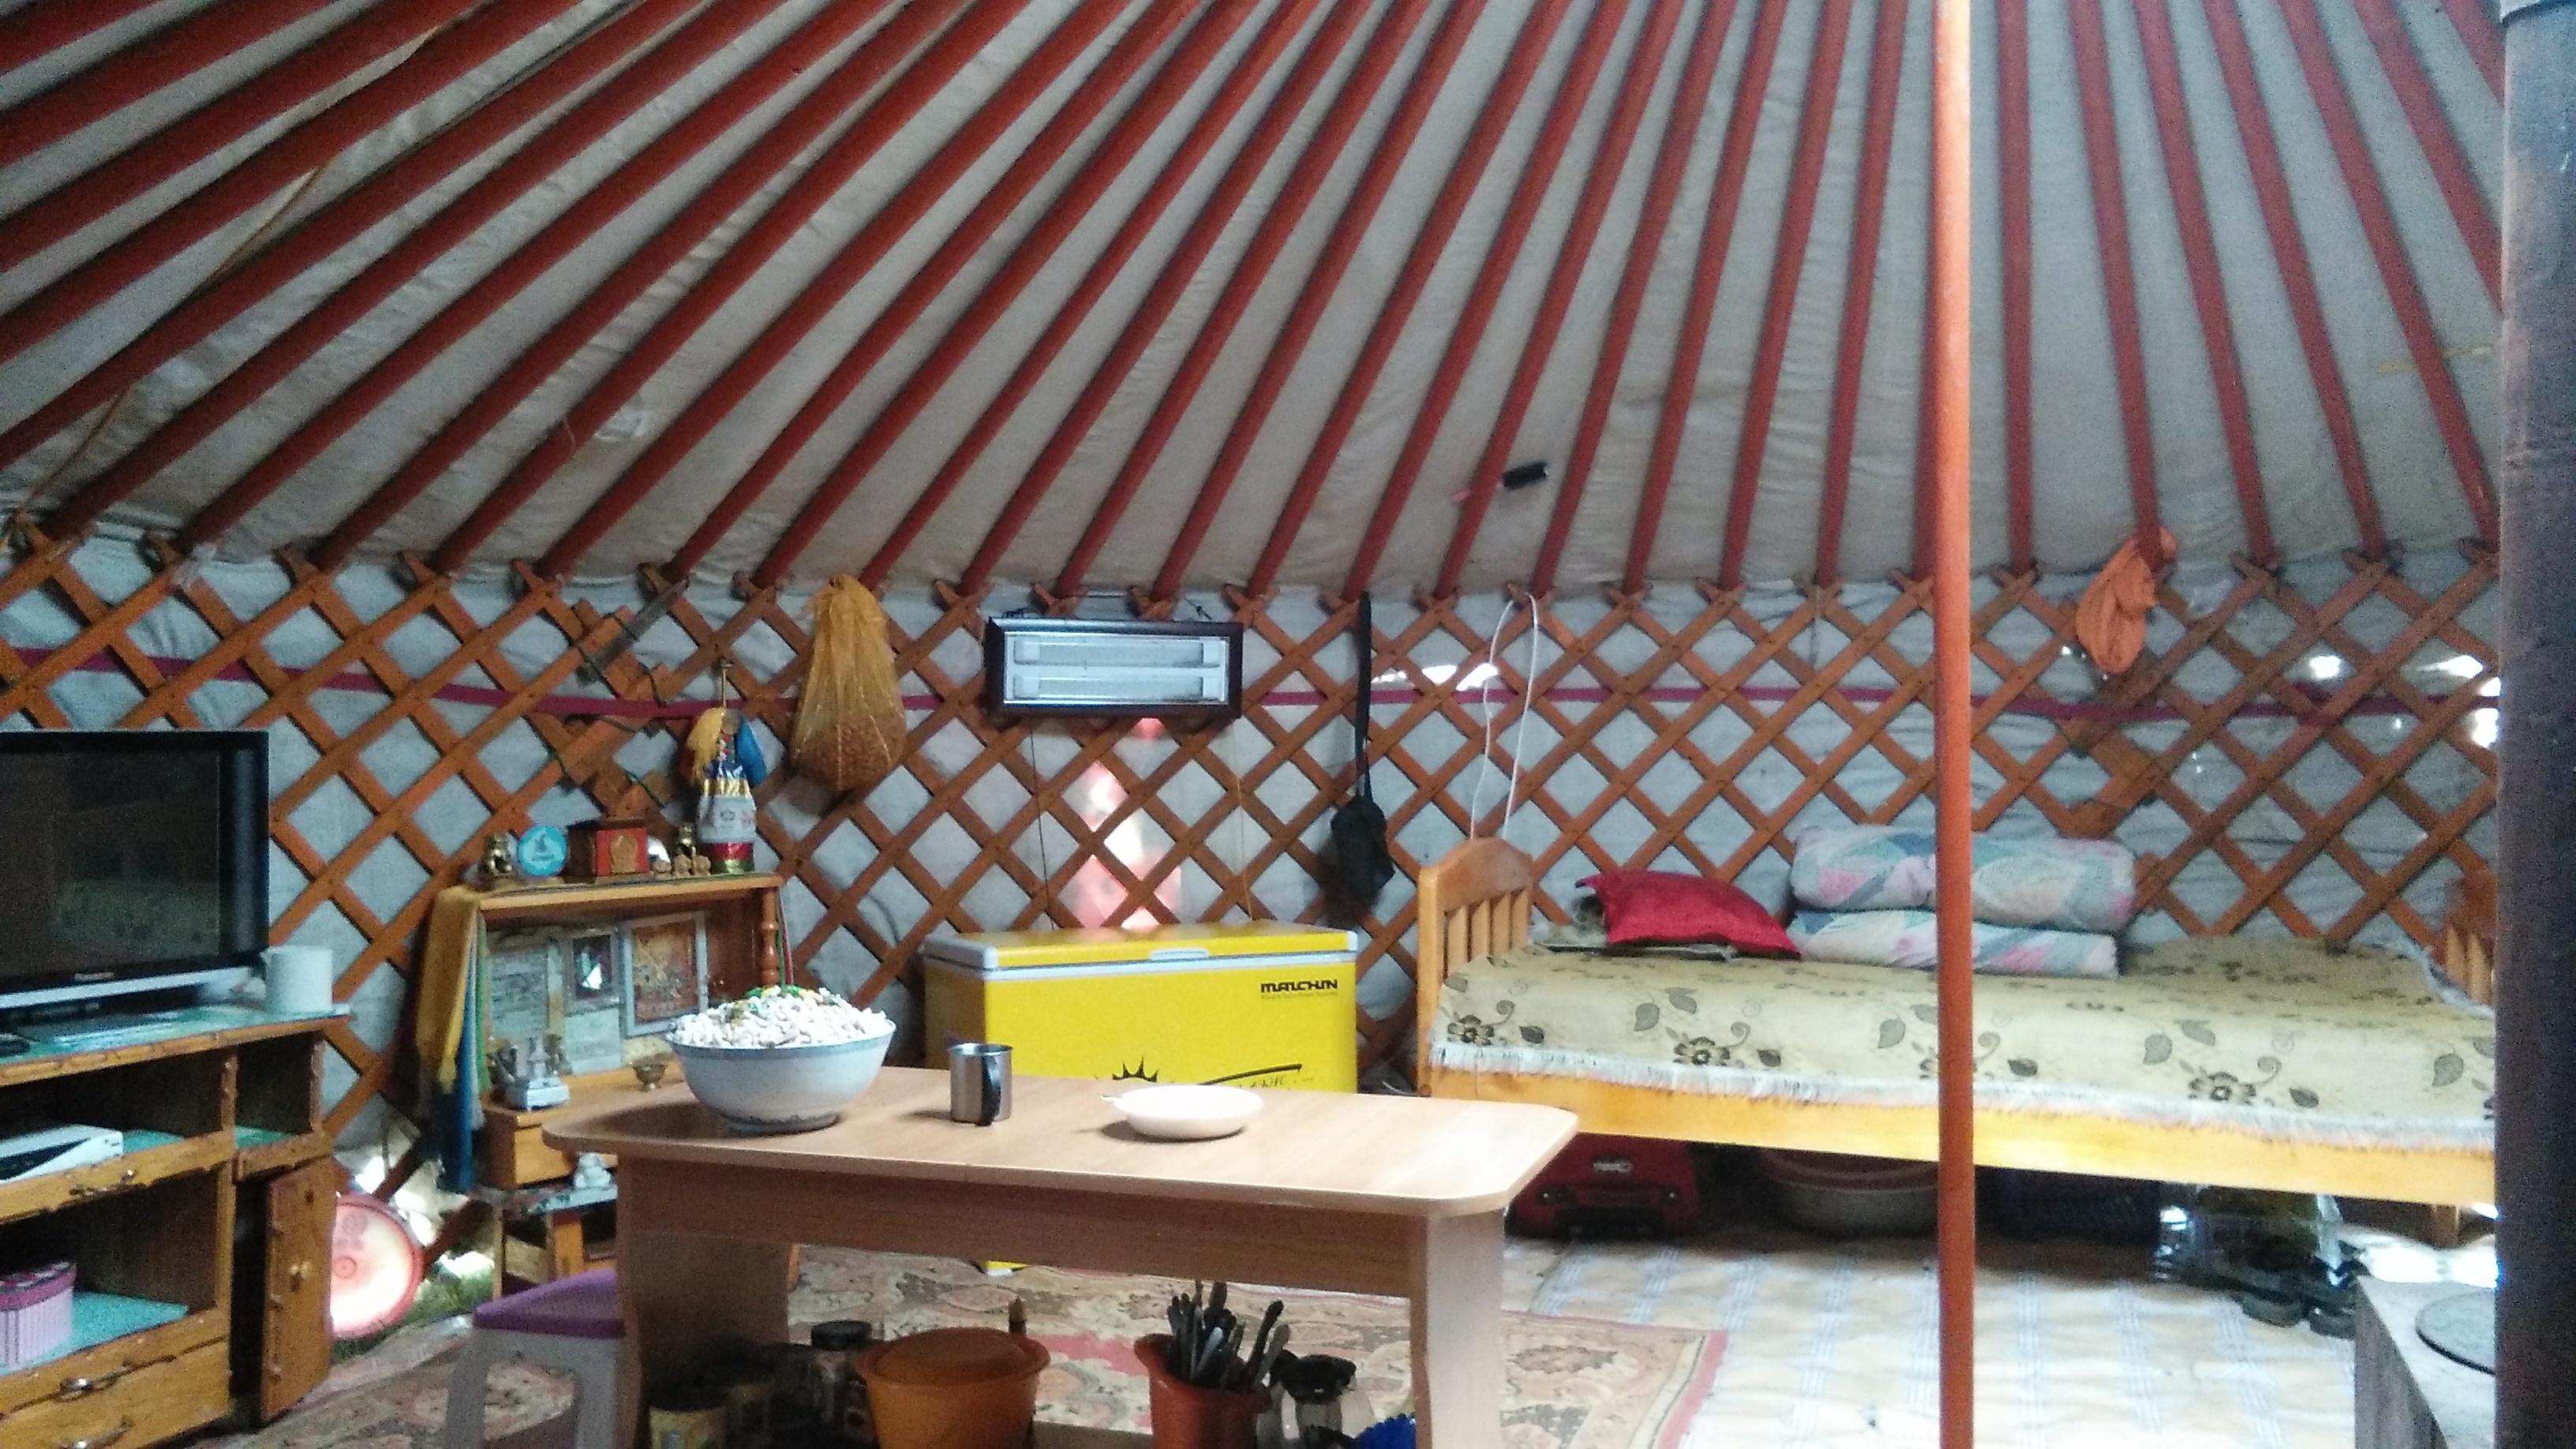 Yurt for sleeping